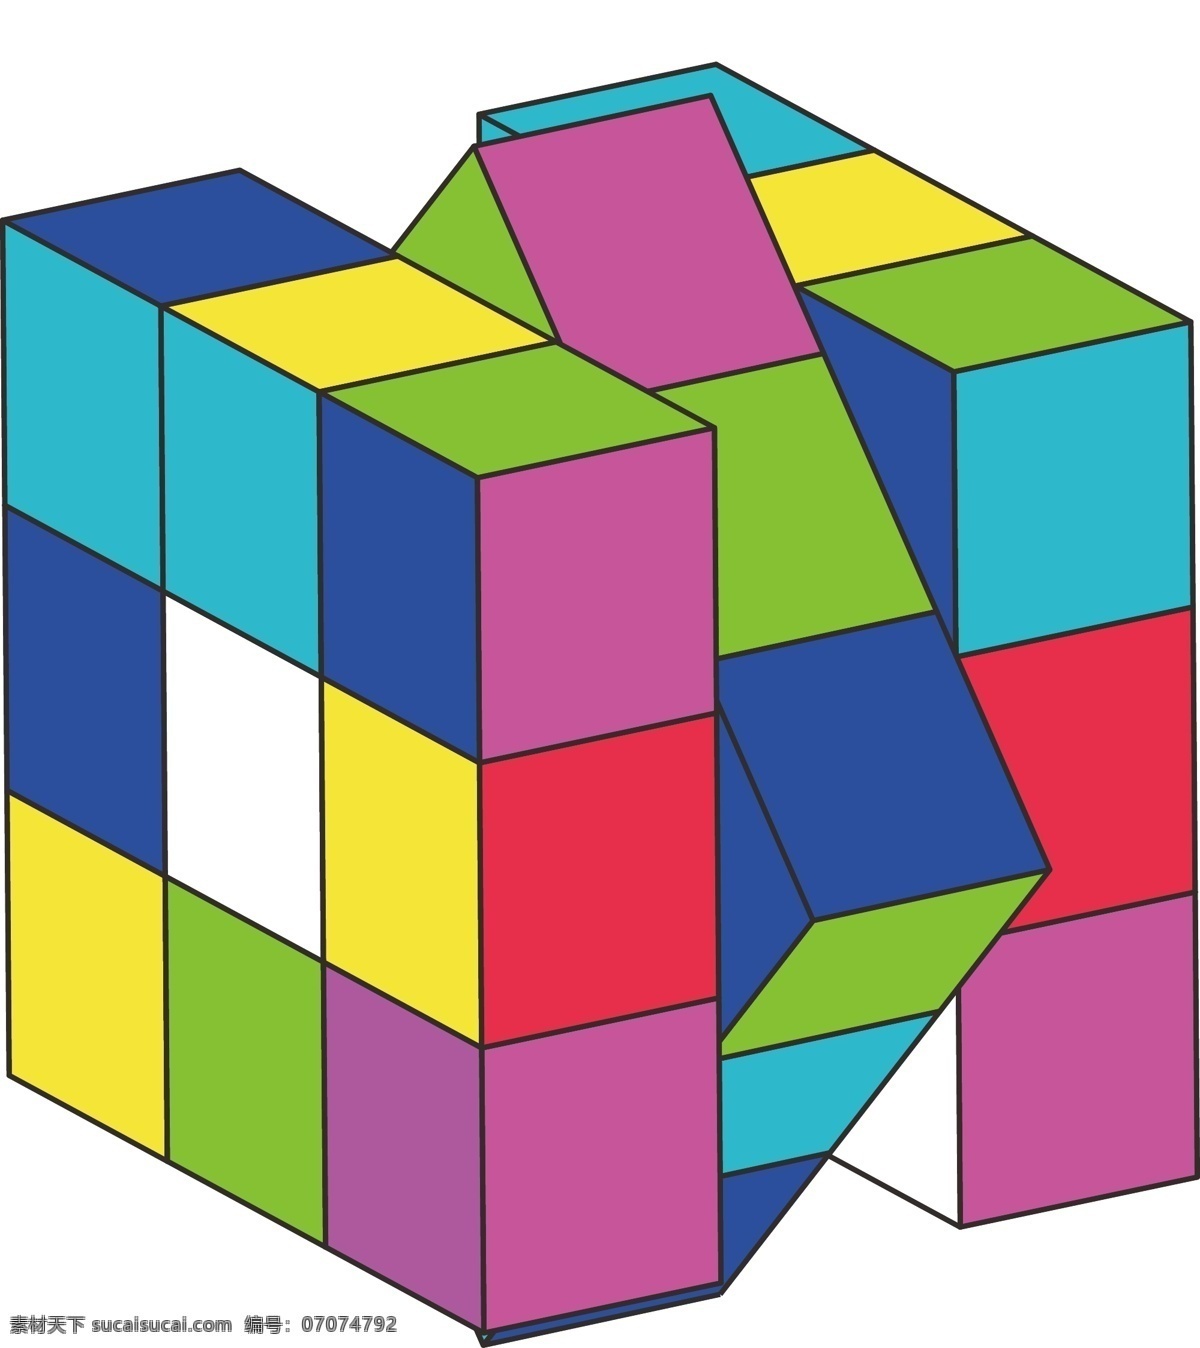 制作 魔方 秘籍 攻略 cs6 智力运动 扭计骰 魔术方块 鲁比克方块 极限运动 三阶魔方 正方体 文化艺术